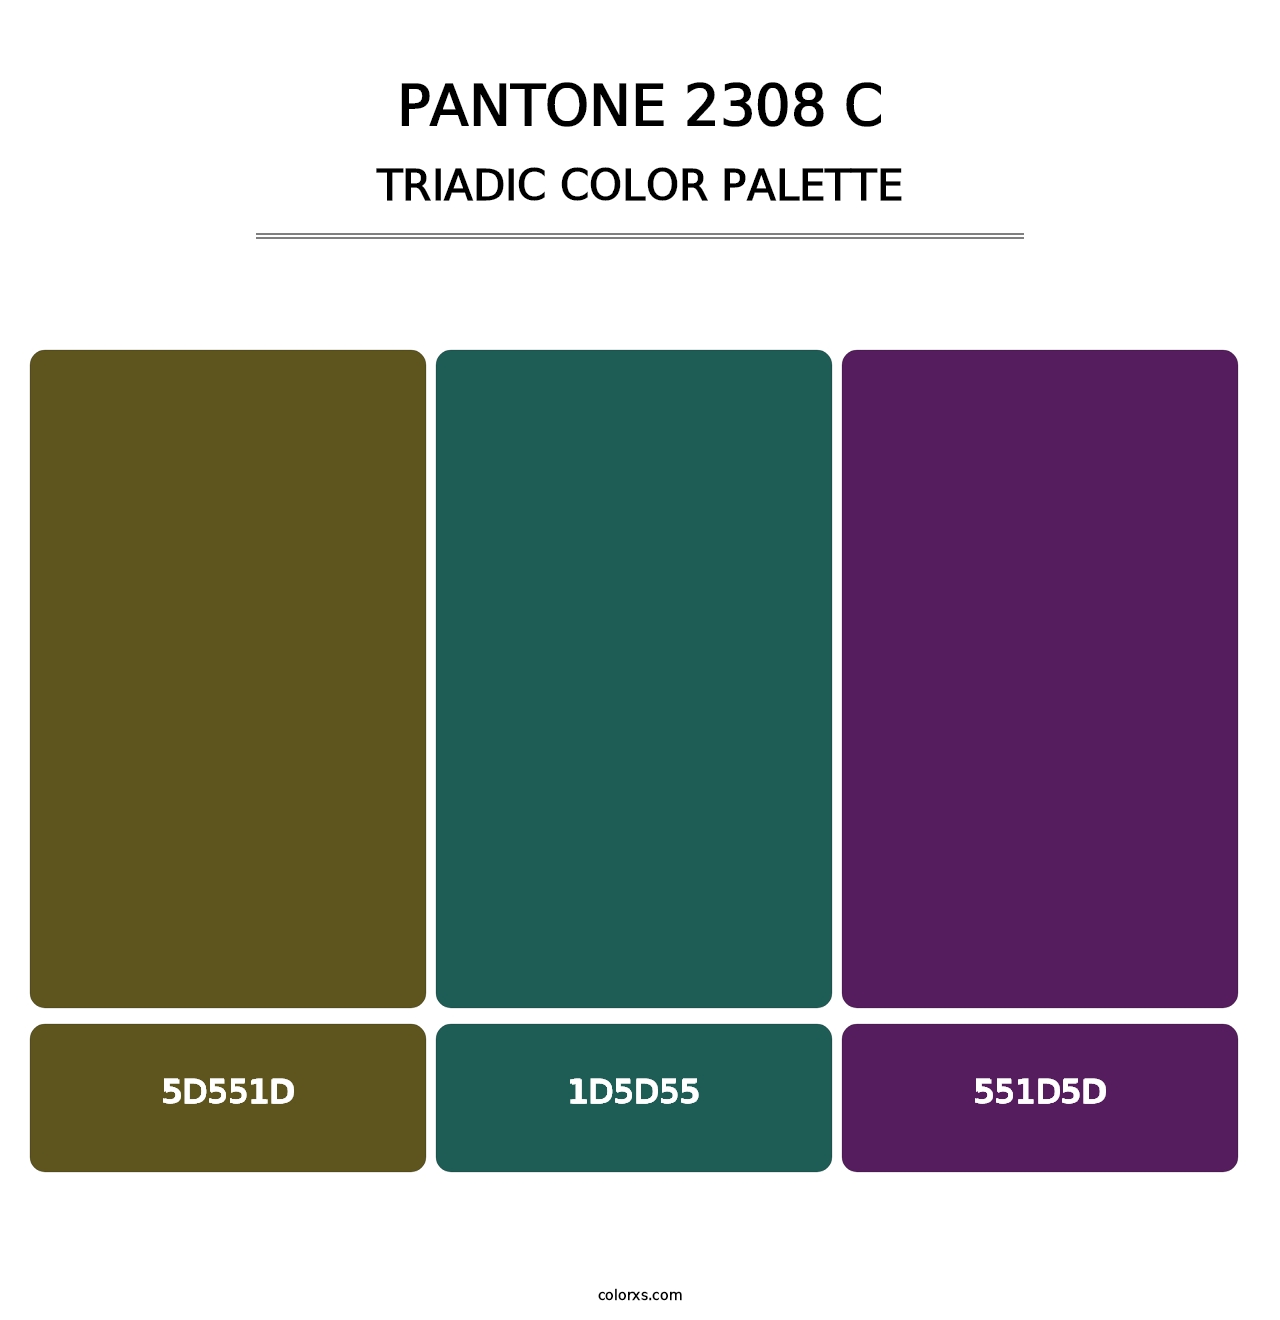 PANTONE 2308 C - Triadic Color Palette